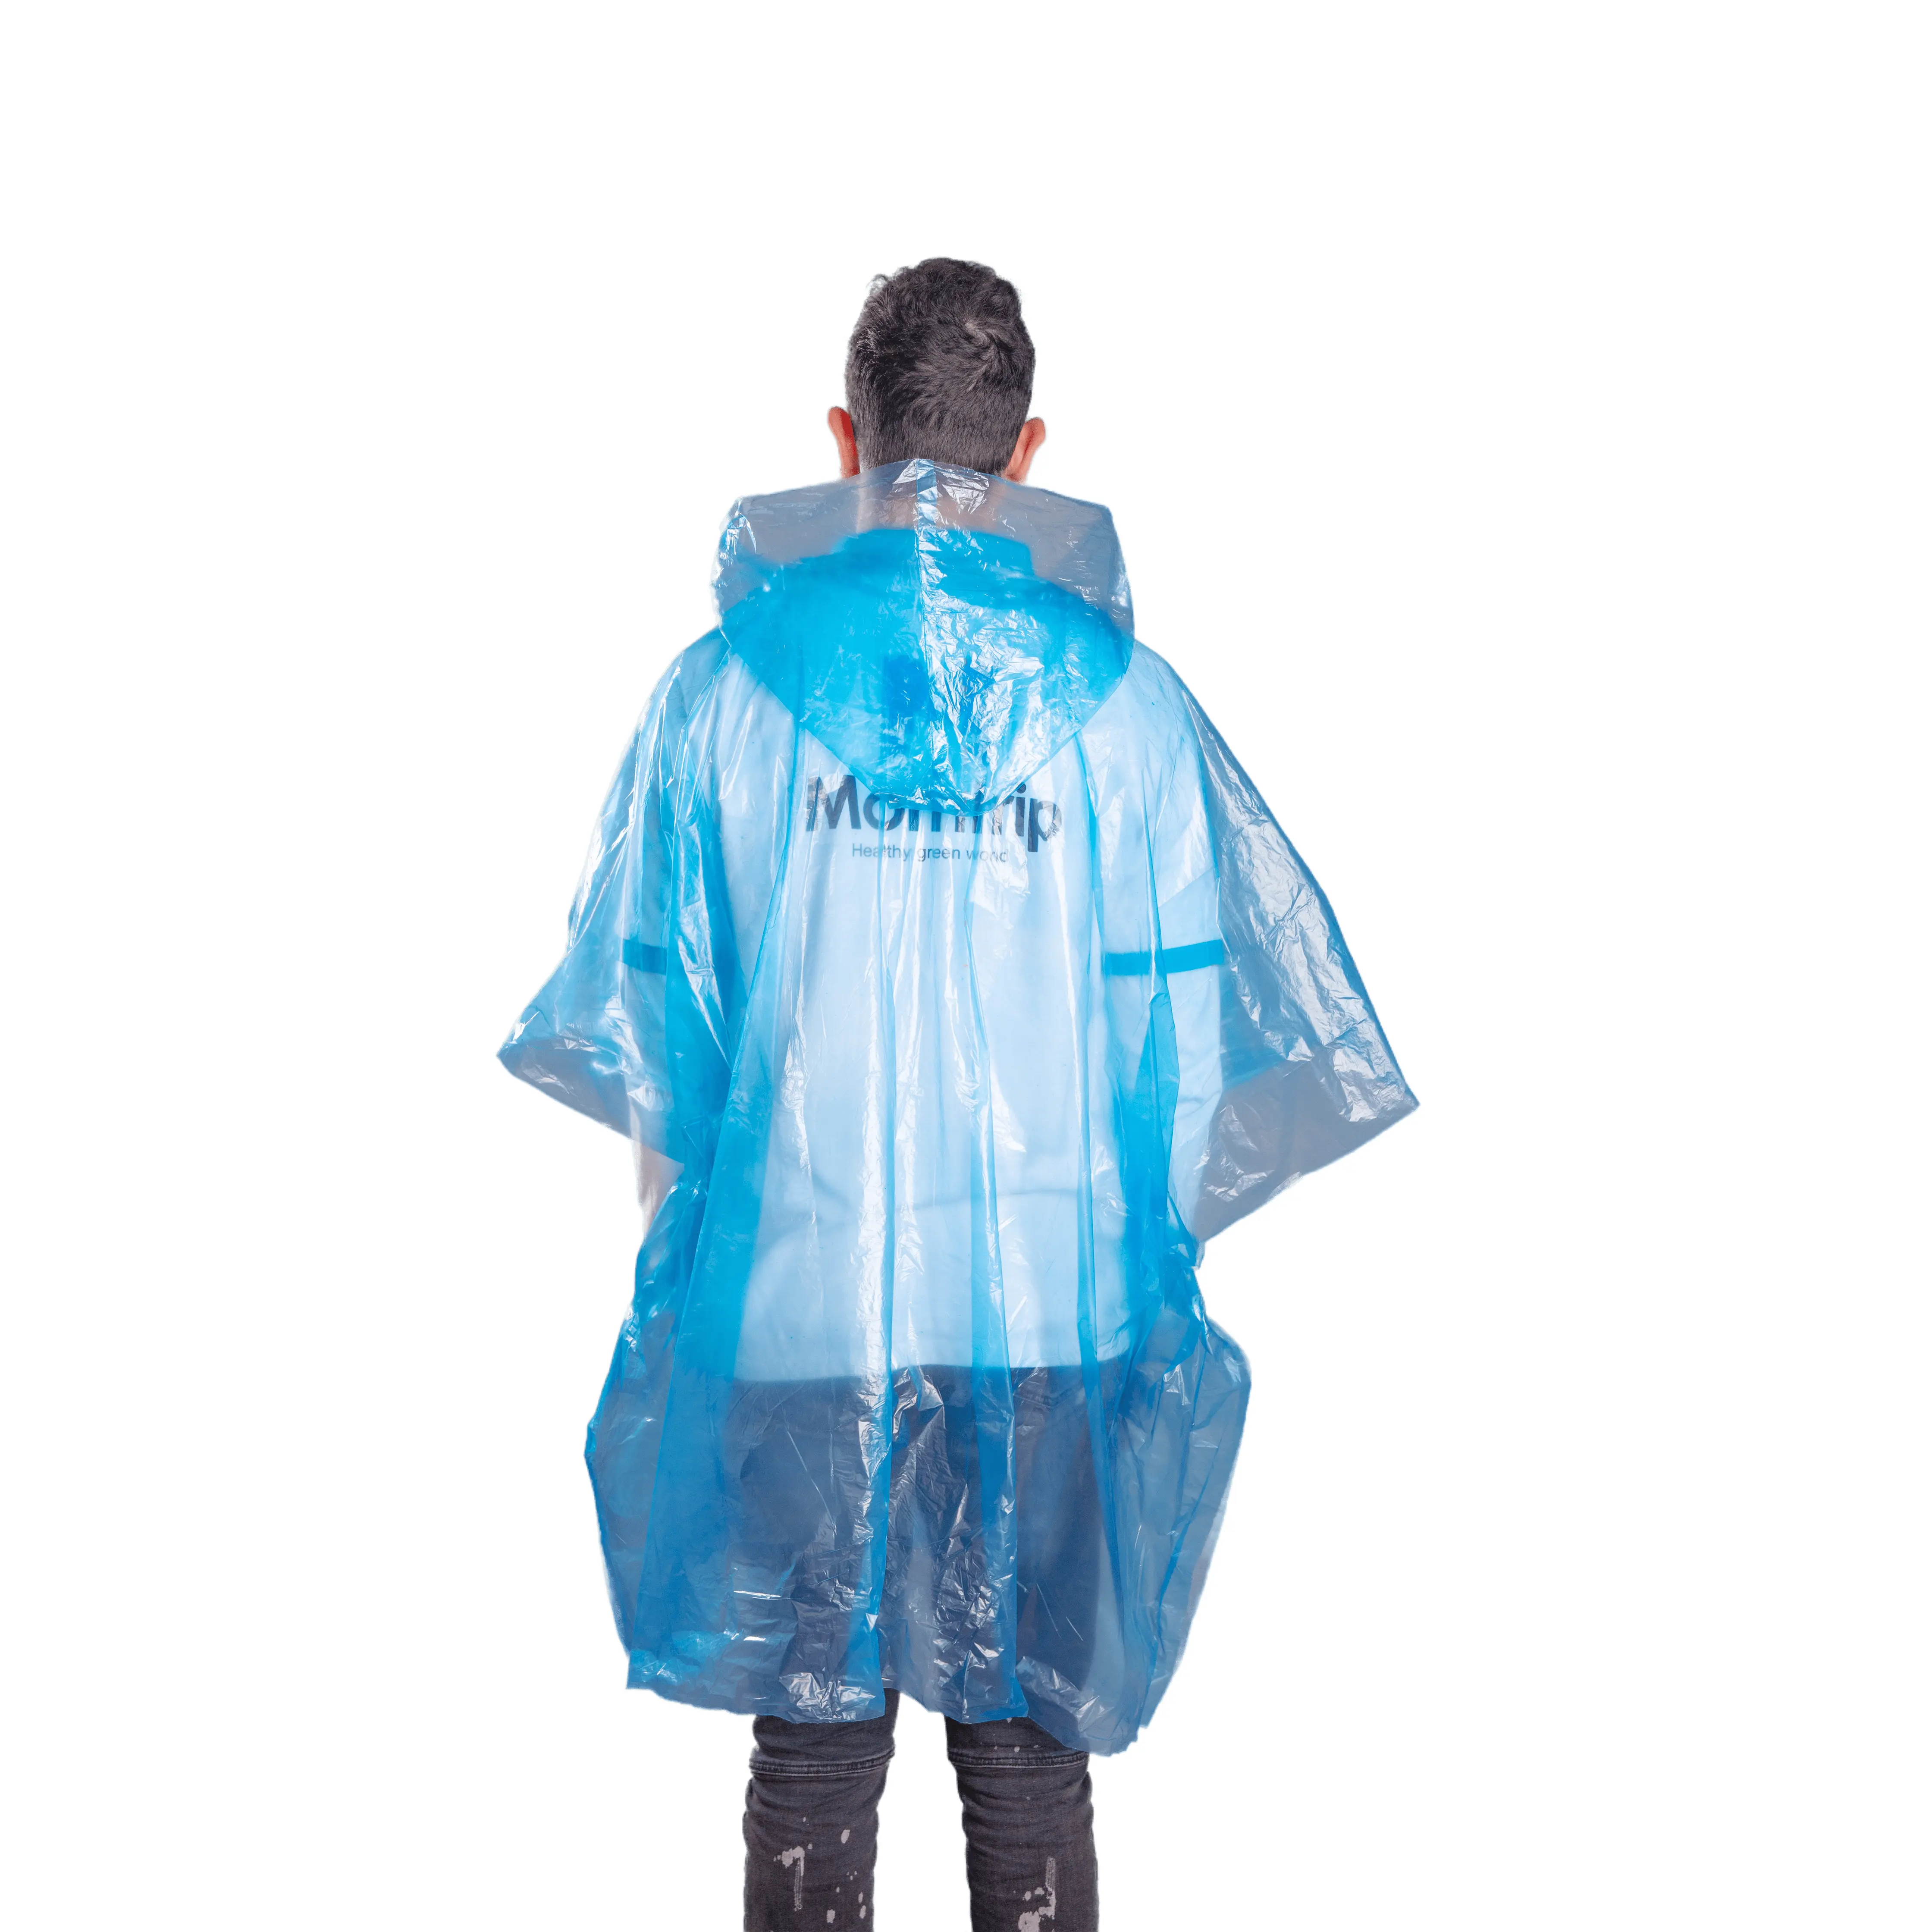 Morntrip Verschiedene Farben Günstiger Preis Hot Selling Tragbarer Poncho Einweg-Regen anzug mit Hosen